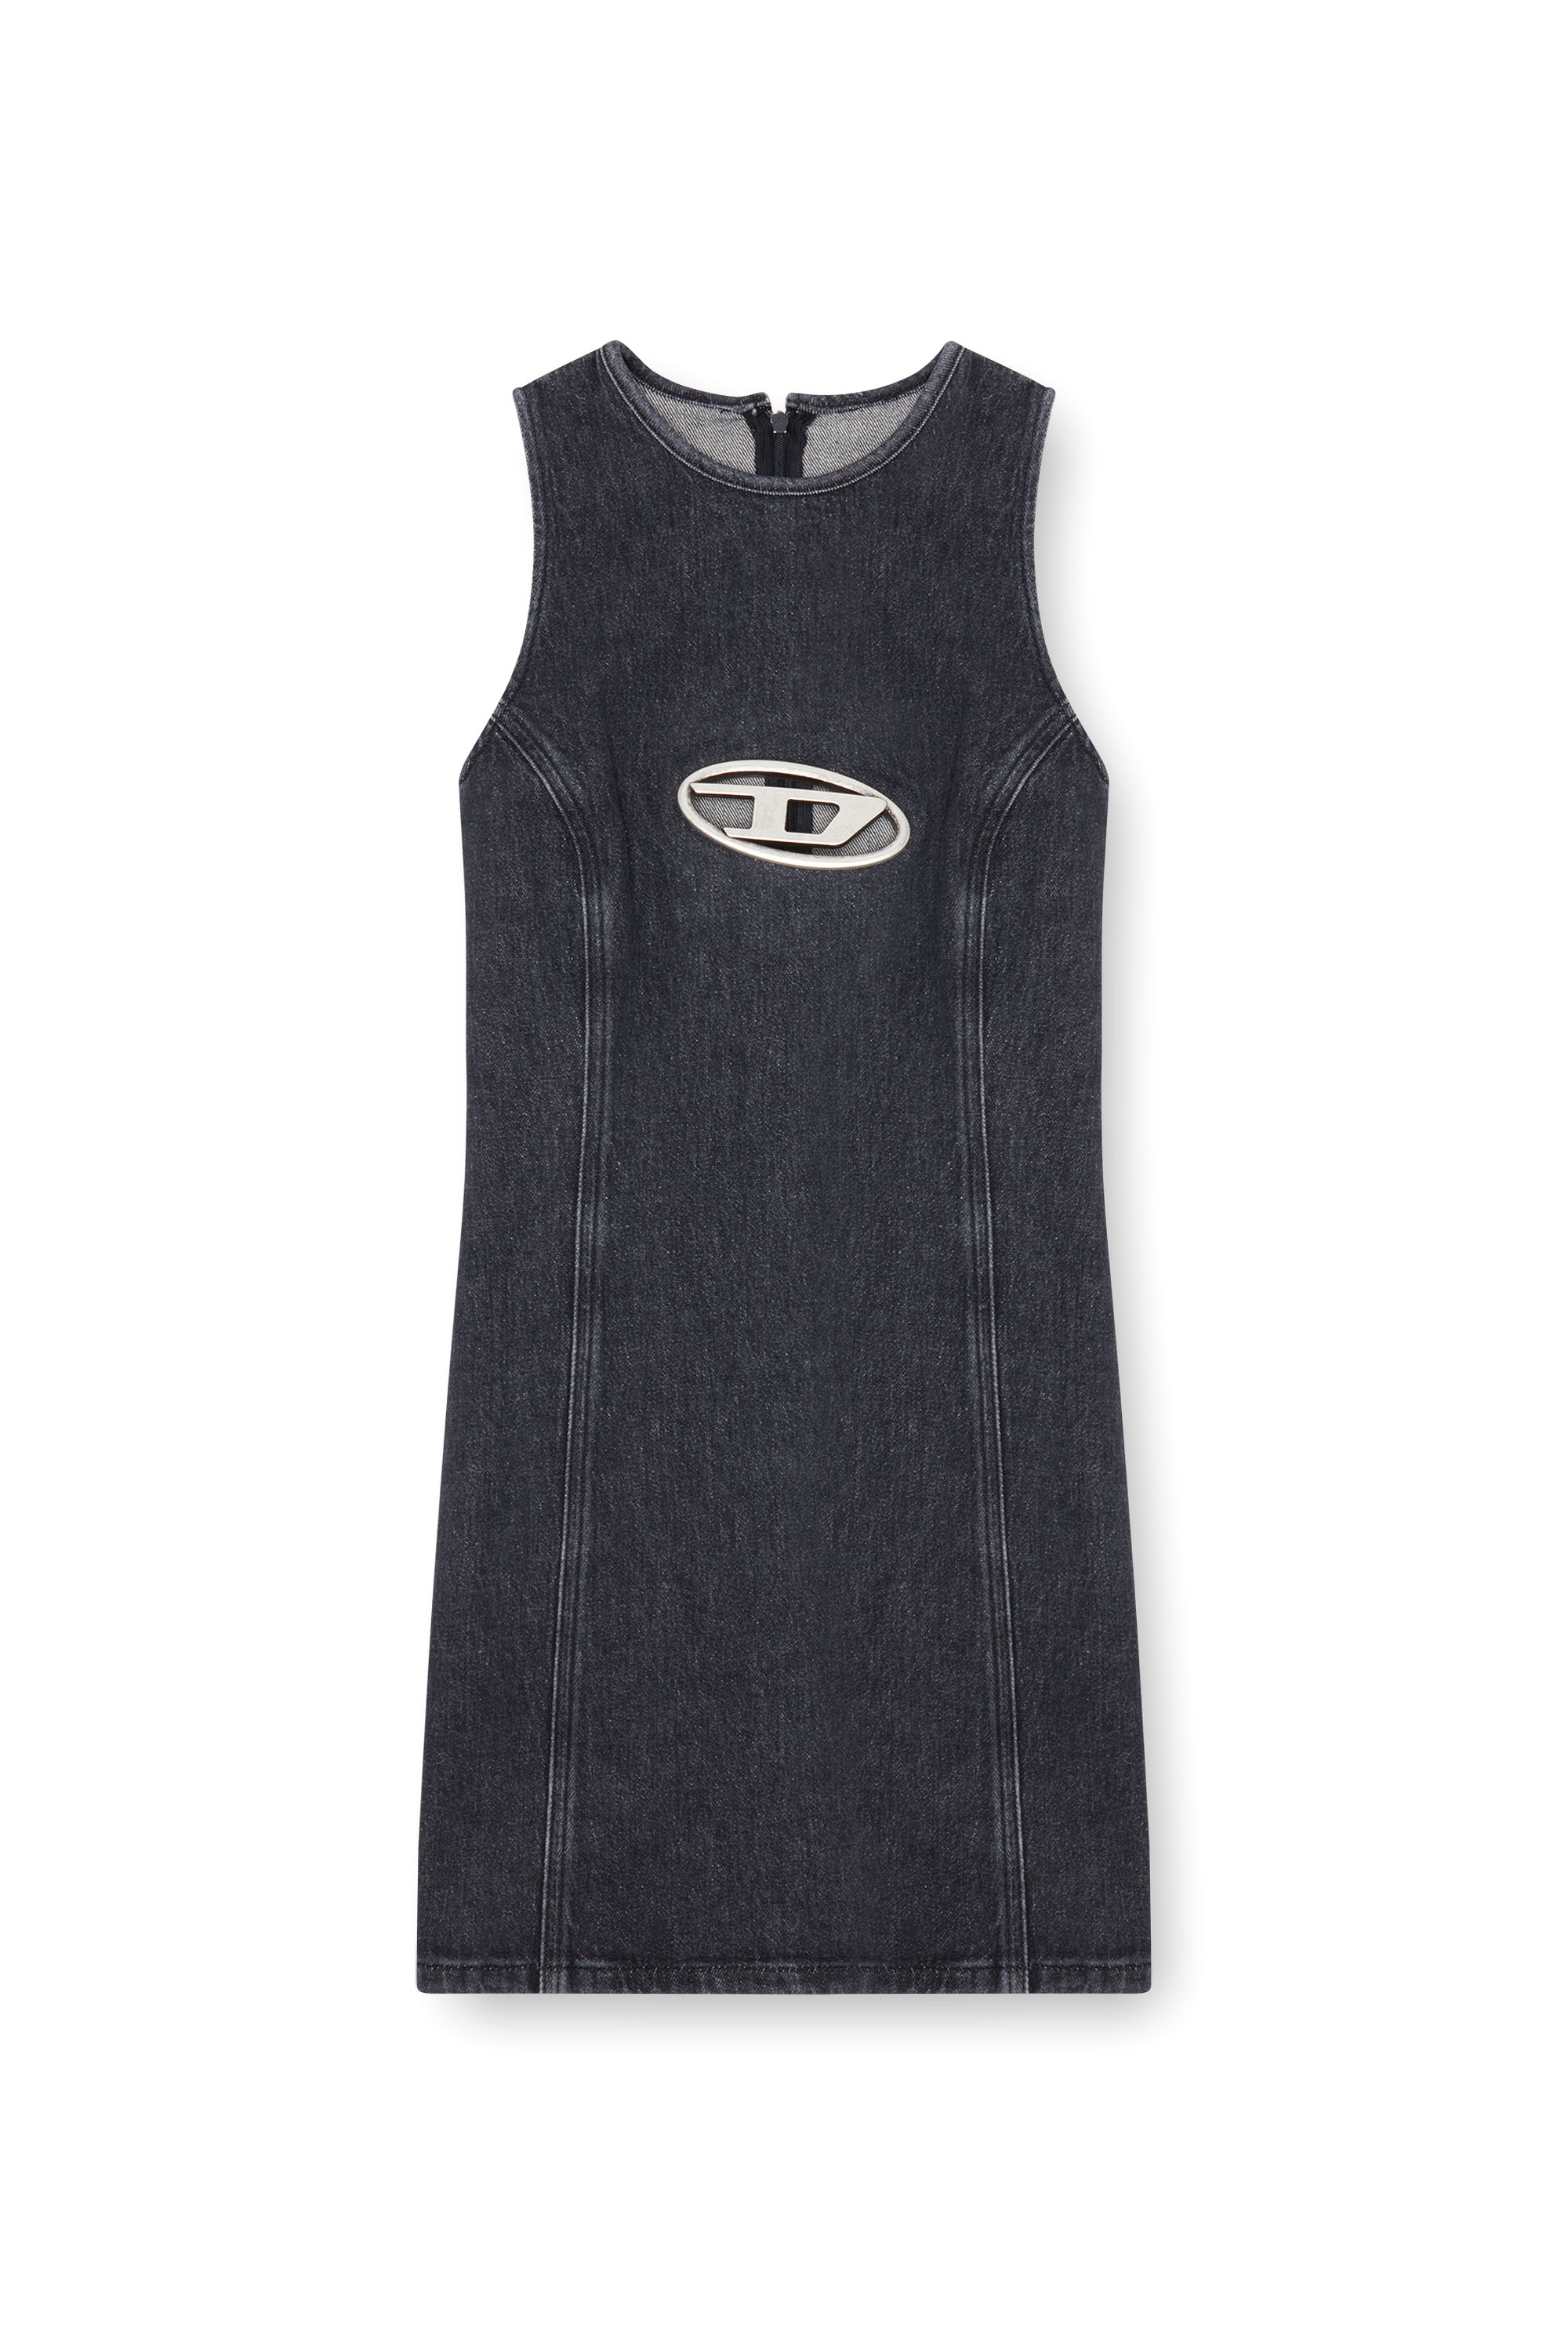 Diesel - DE-FERRIZ-FSD, Woman Denim mini dress with Oval D plaque in Black - Image 4